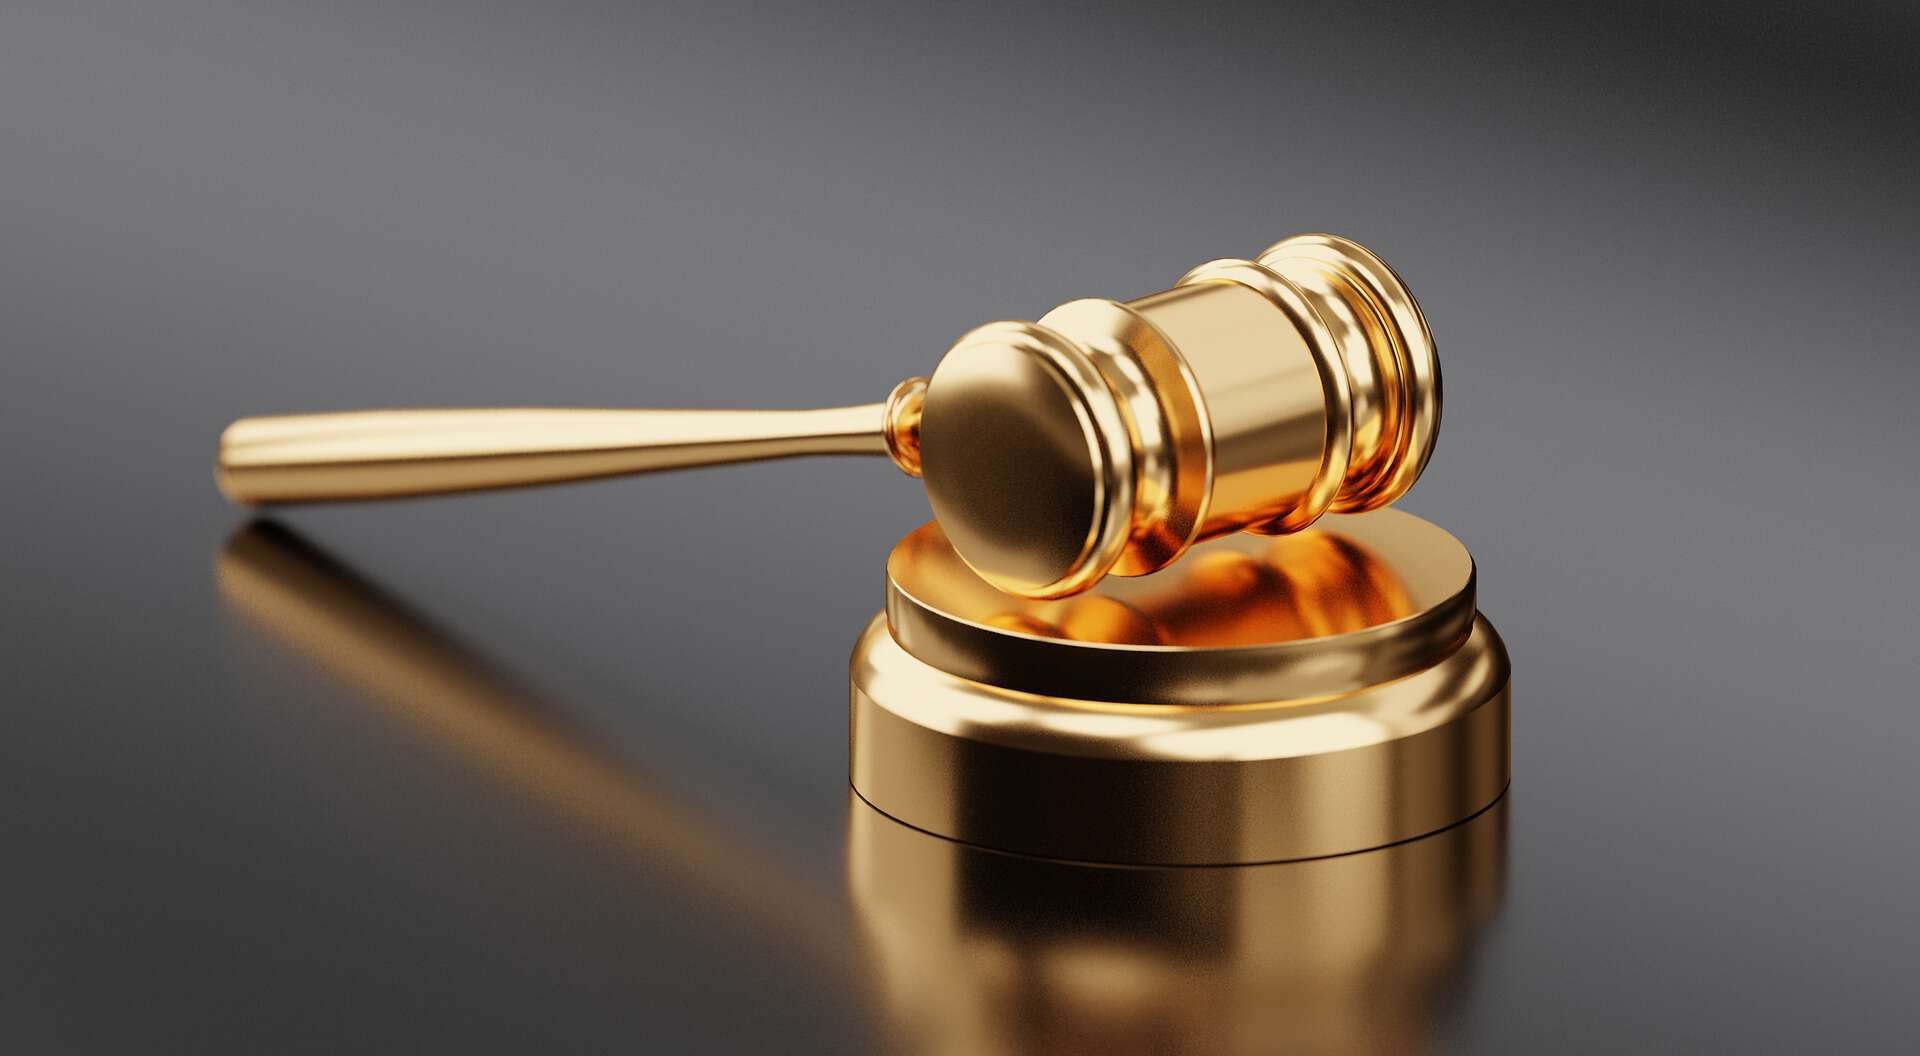 Kneppelhout advocaten ondernemingsrecht - Het wetsvoorstel Tijdelijke wet transparantie turboliquidatie is ingediend